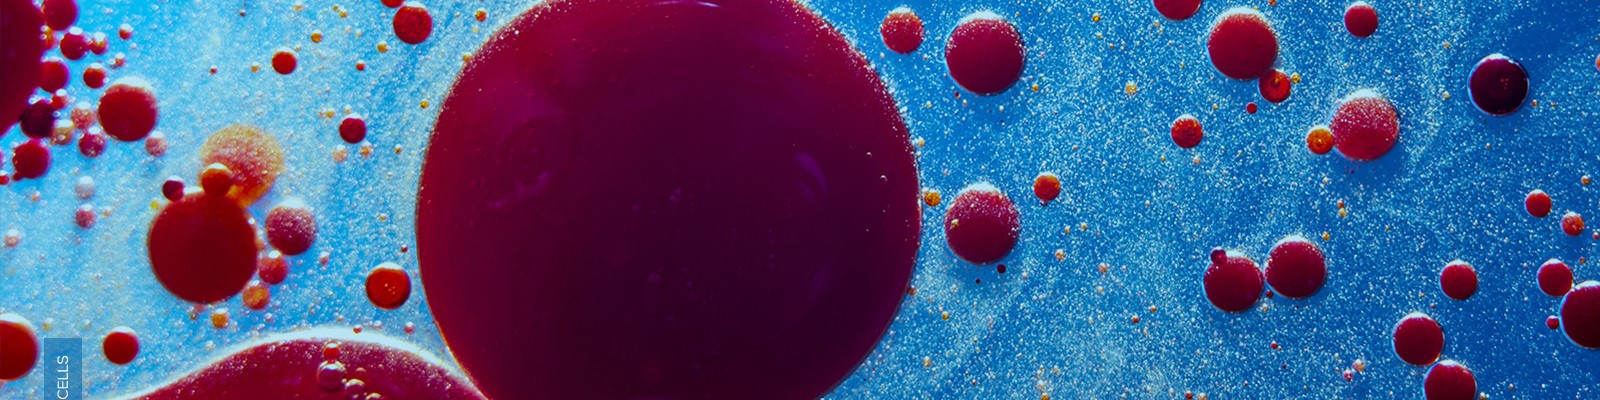 Simbec blood-cells-hero image